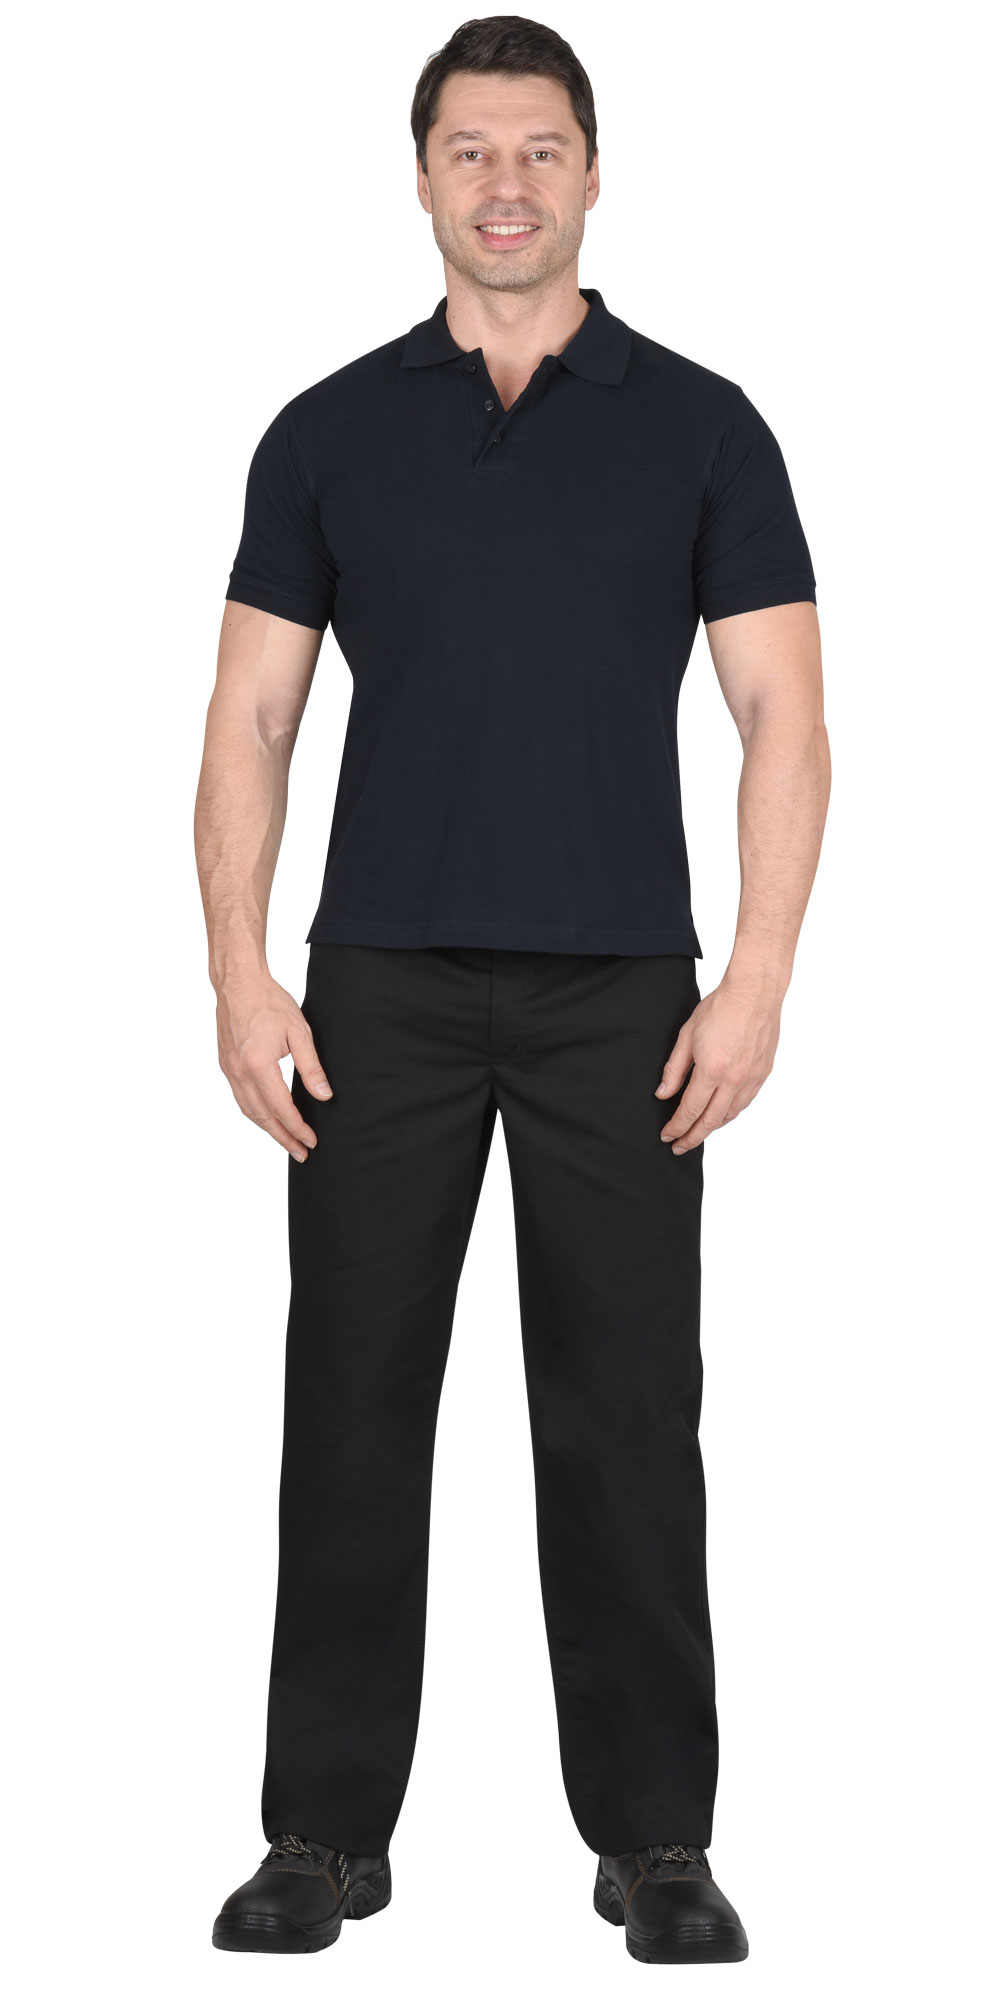 Рубашка-поло мужская, рукав короткий, цвет: темно-синий, плотность 180г/кв.м